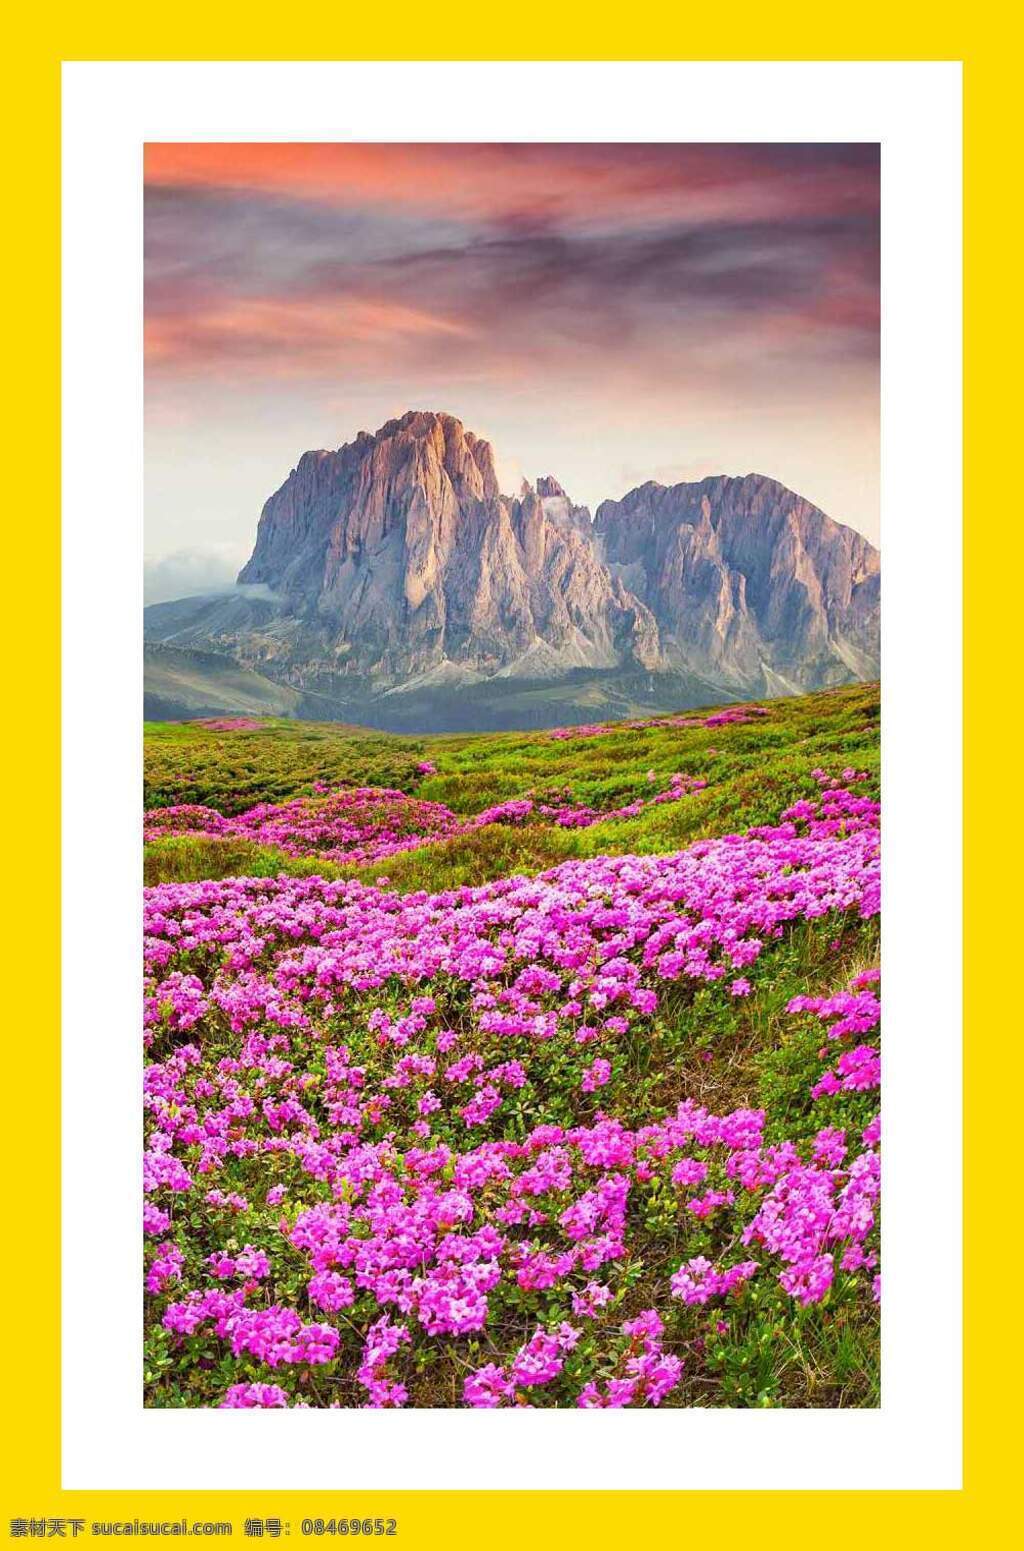 山峰鲜花风景 娇艳的鲜花 梦幻般的山峰 春天的山峰 山峰拍摄 鲜花旅游 自然景观 自然风景